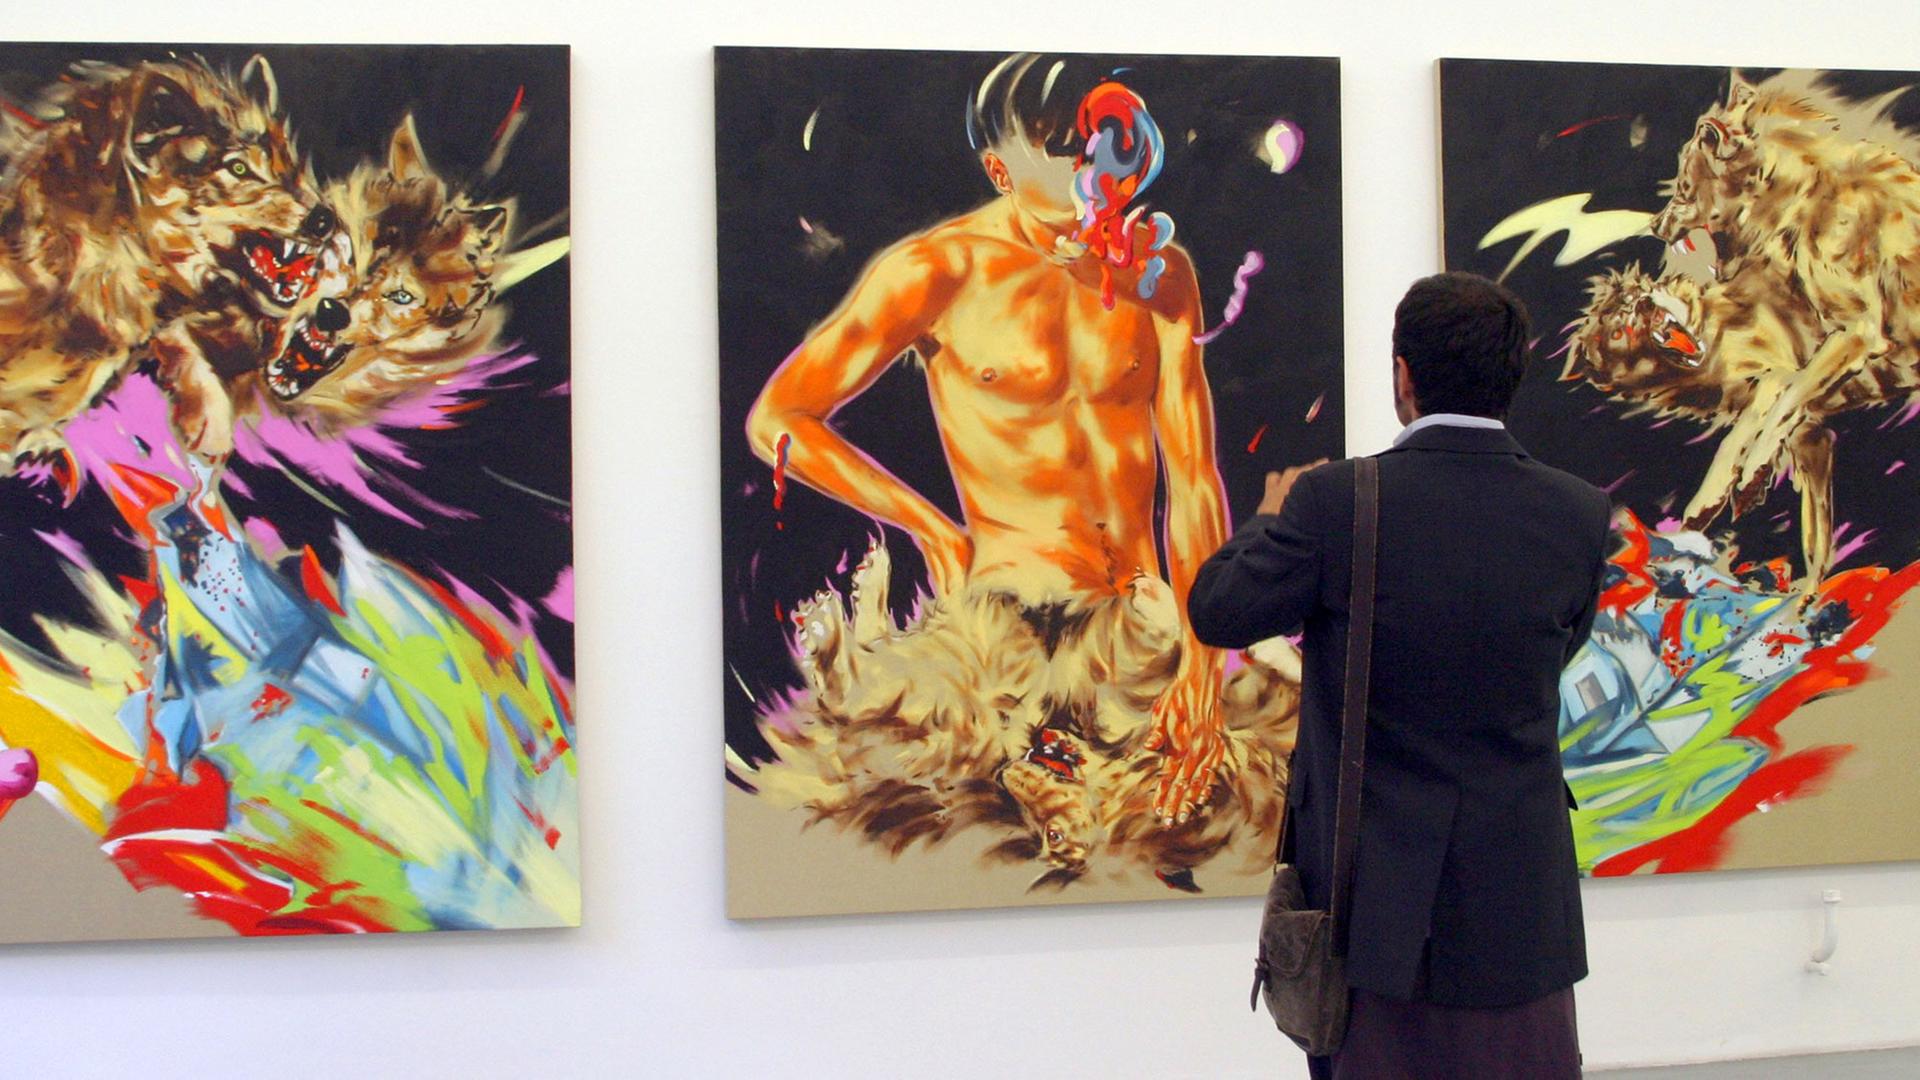 Ein Mann fotografiert Gemälde des Malers Norbert Bisky am Freitag (05.09.2008) in der Galerie Crone in Berlin. Bisky eröffnete seine Ausstellung mit dem Titel "privat" mit den neuesten Arbeiten.